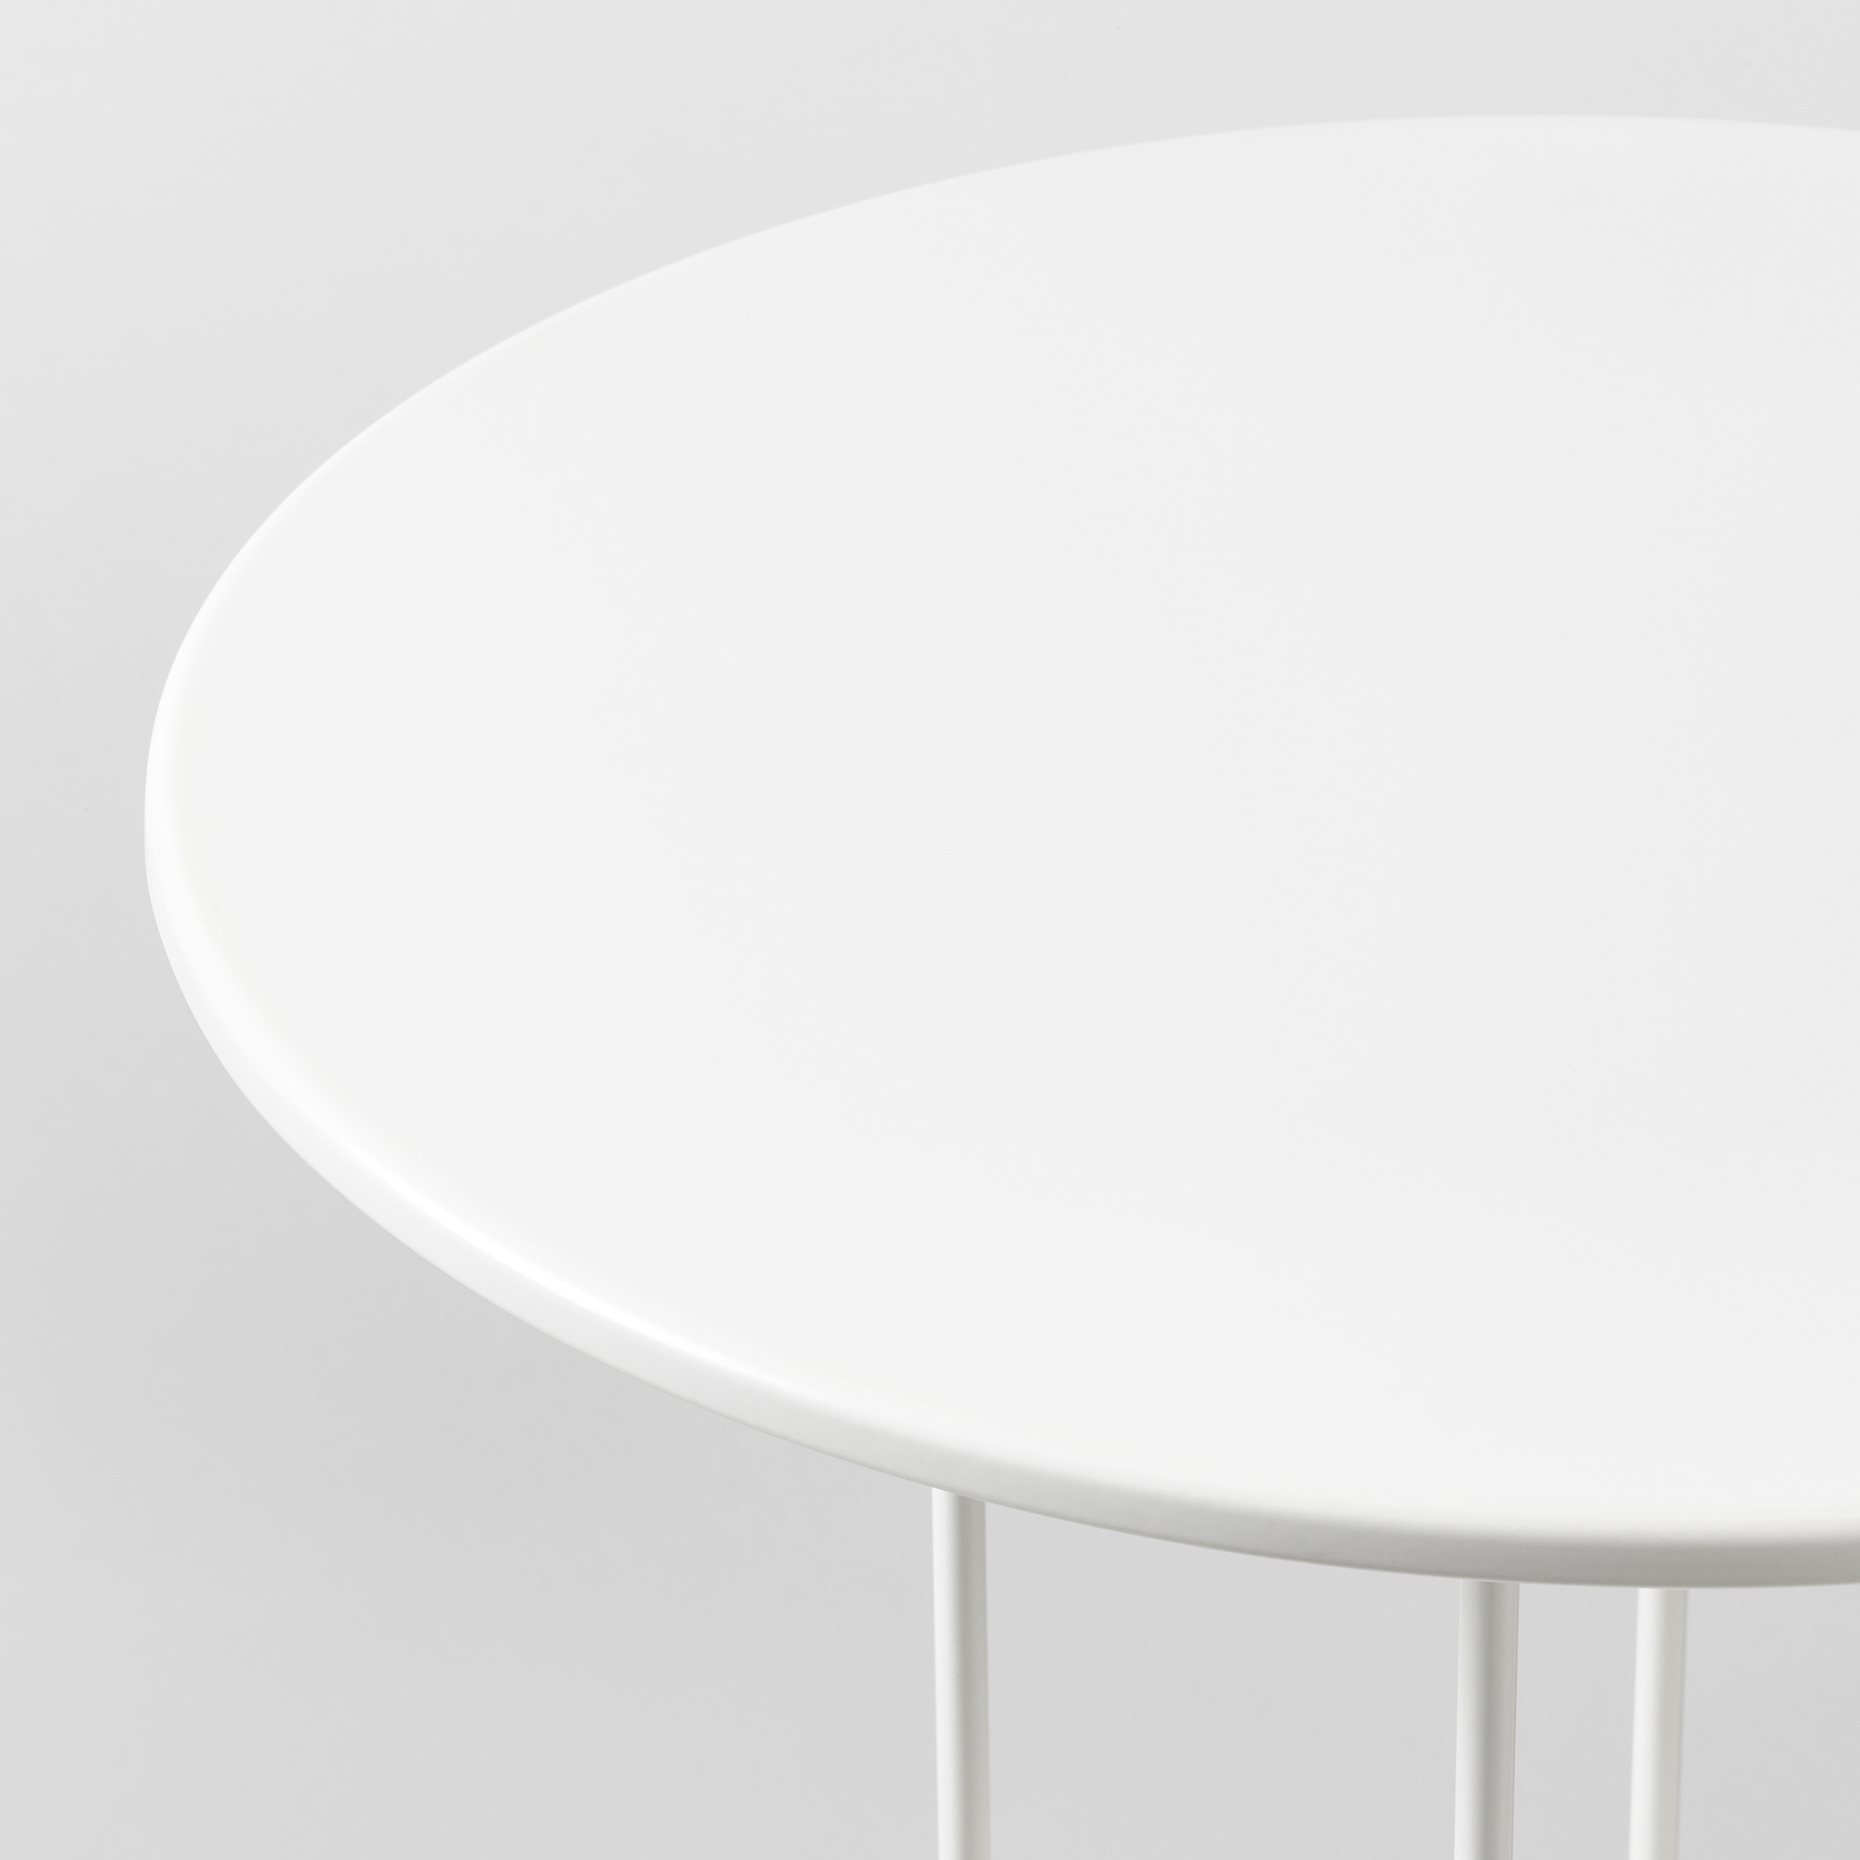 Lindved ЛИНДВЕД придиванный столик, белый50x68 см